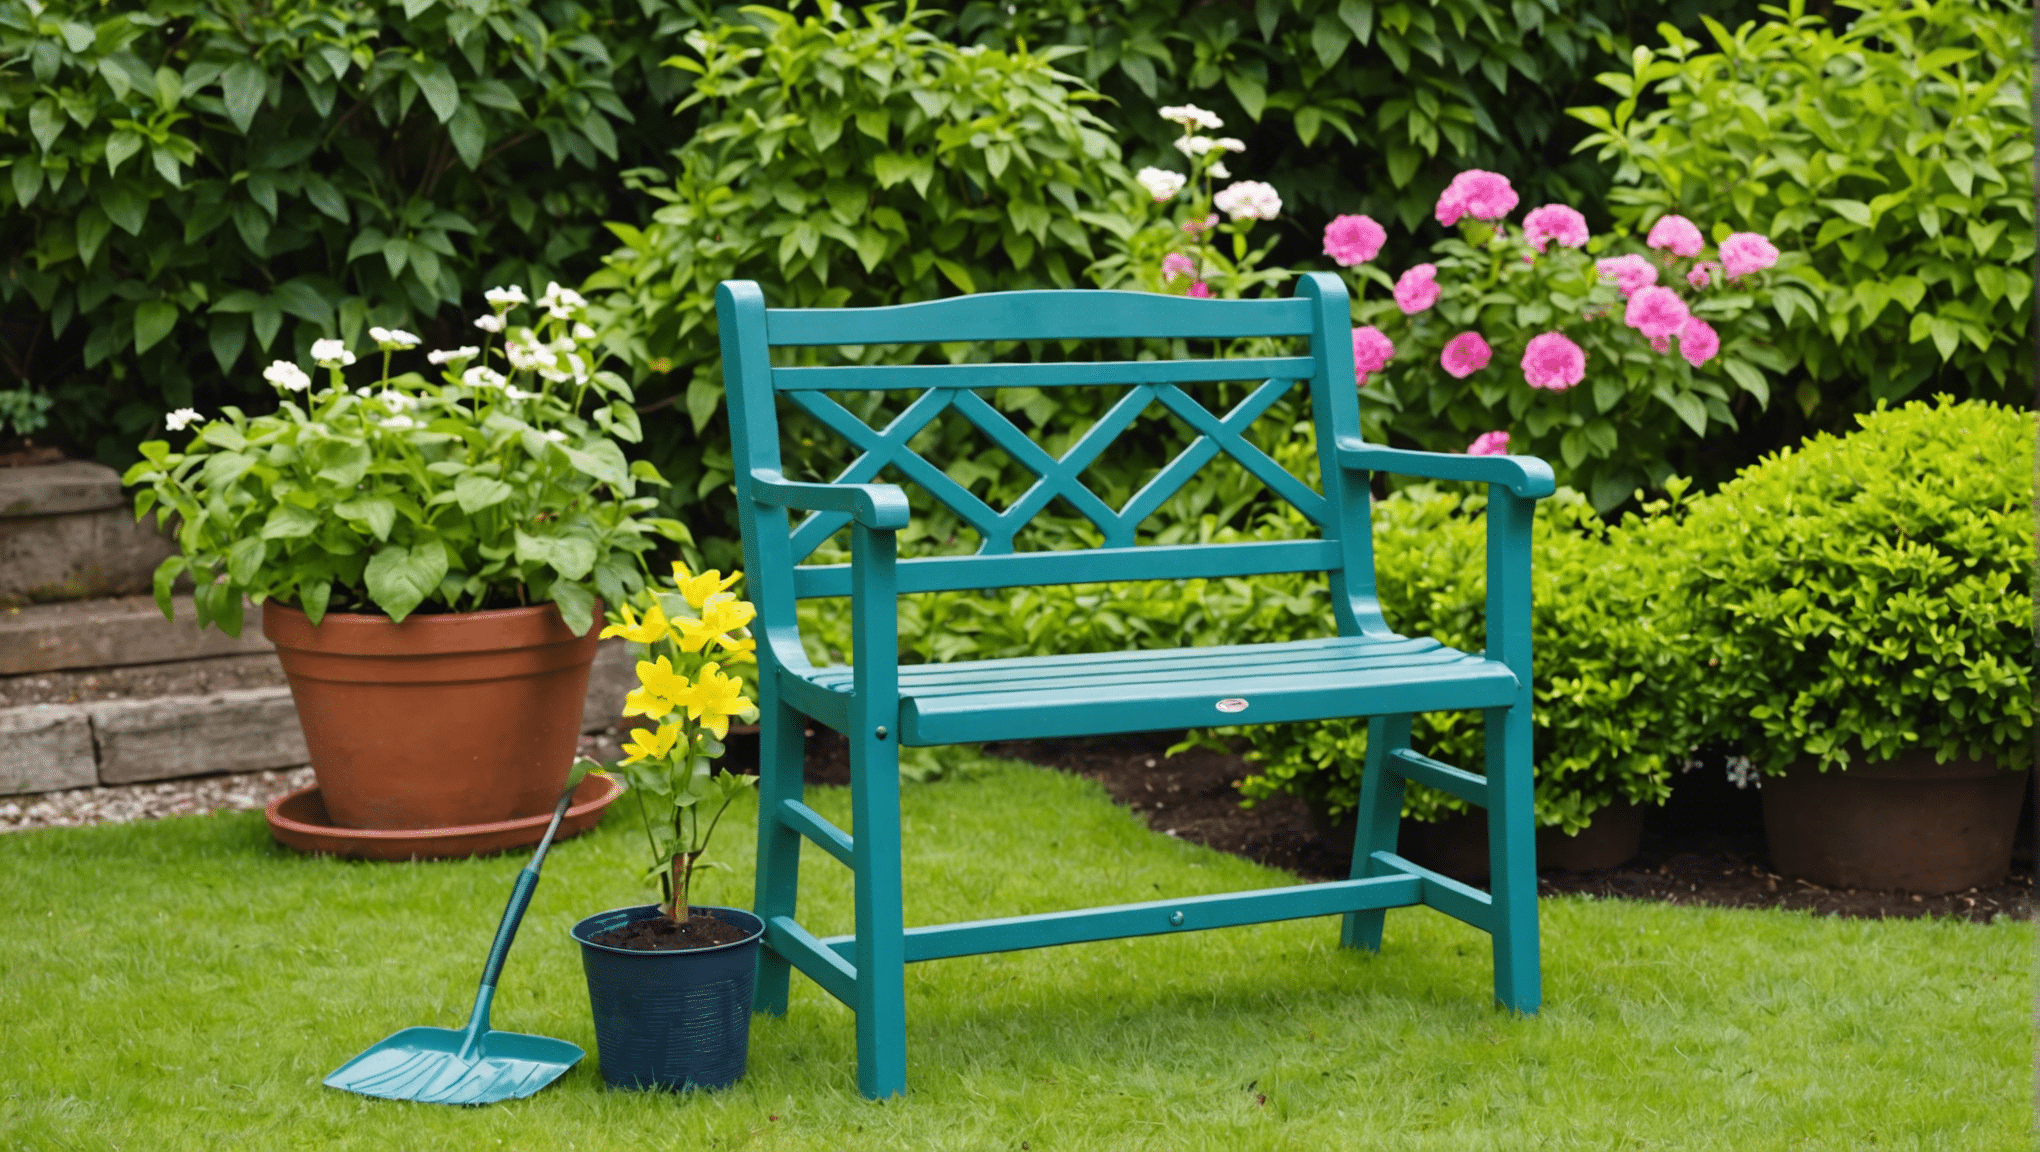 scopri i vantaggi dell'utilizzo di un sedile da giardinaggio e come può migliorare la tua esperienza di giardinaggio. salva la schiena e le ginocchia mentre ti godi il tuo tempo in giardino!